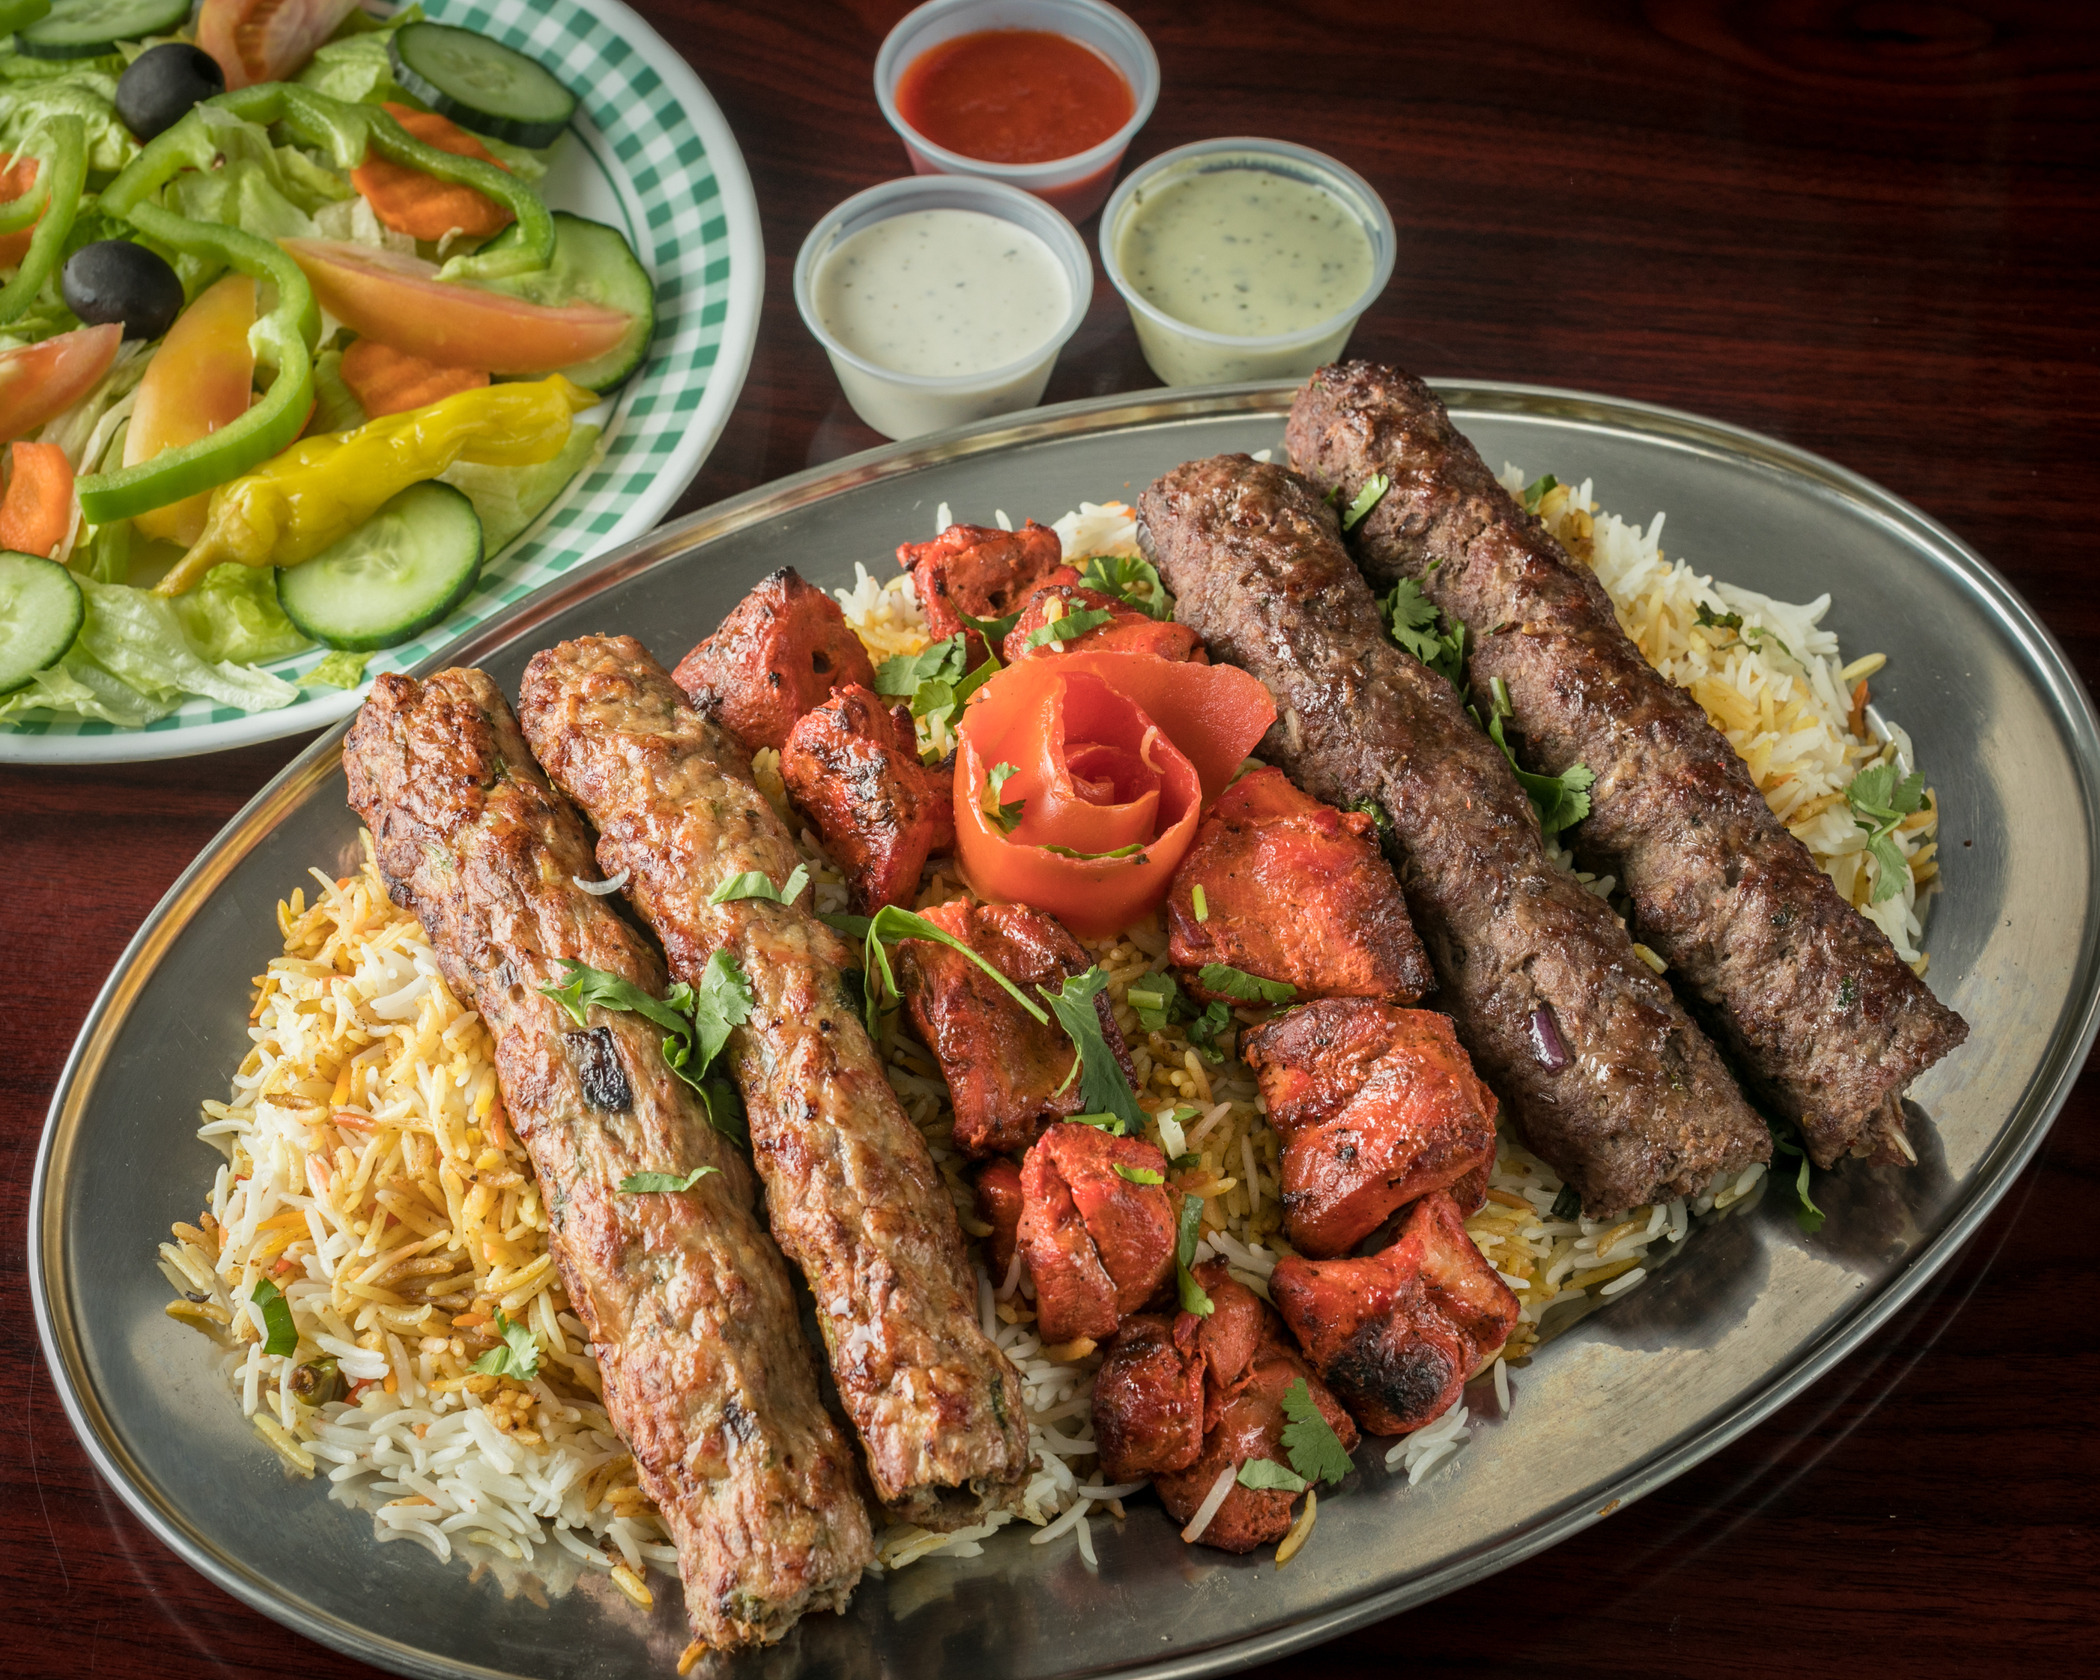 Order 47. Special 6 Skewers Platter food online from Peshawri Kebab store, Waltham on bringmethat.com